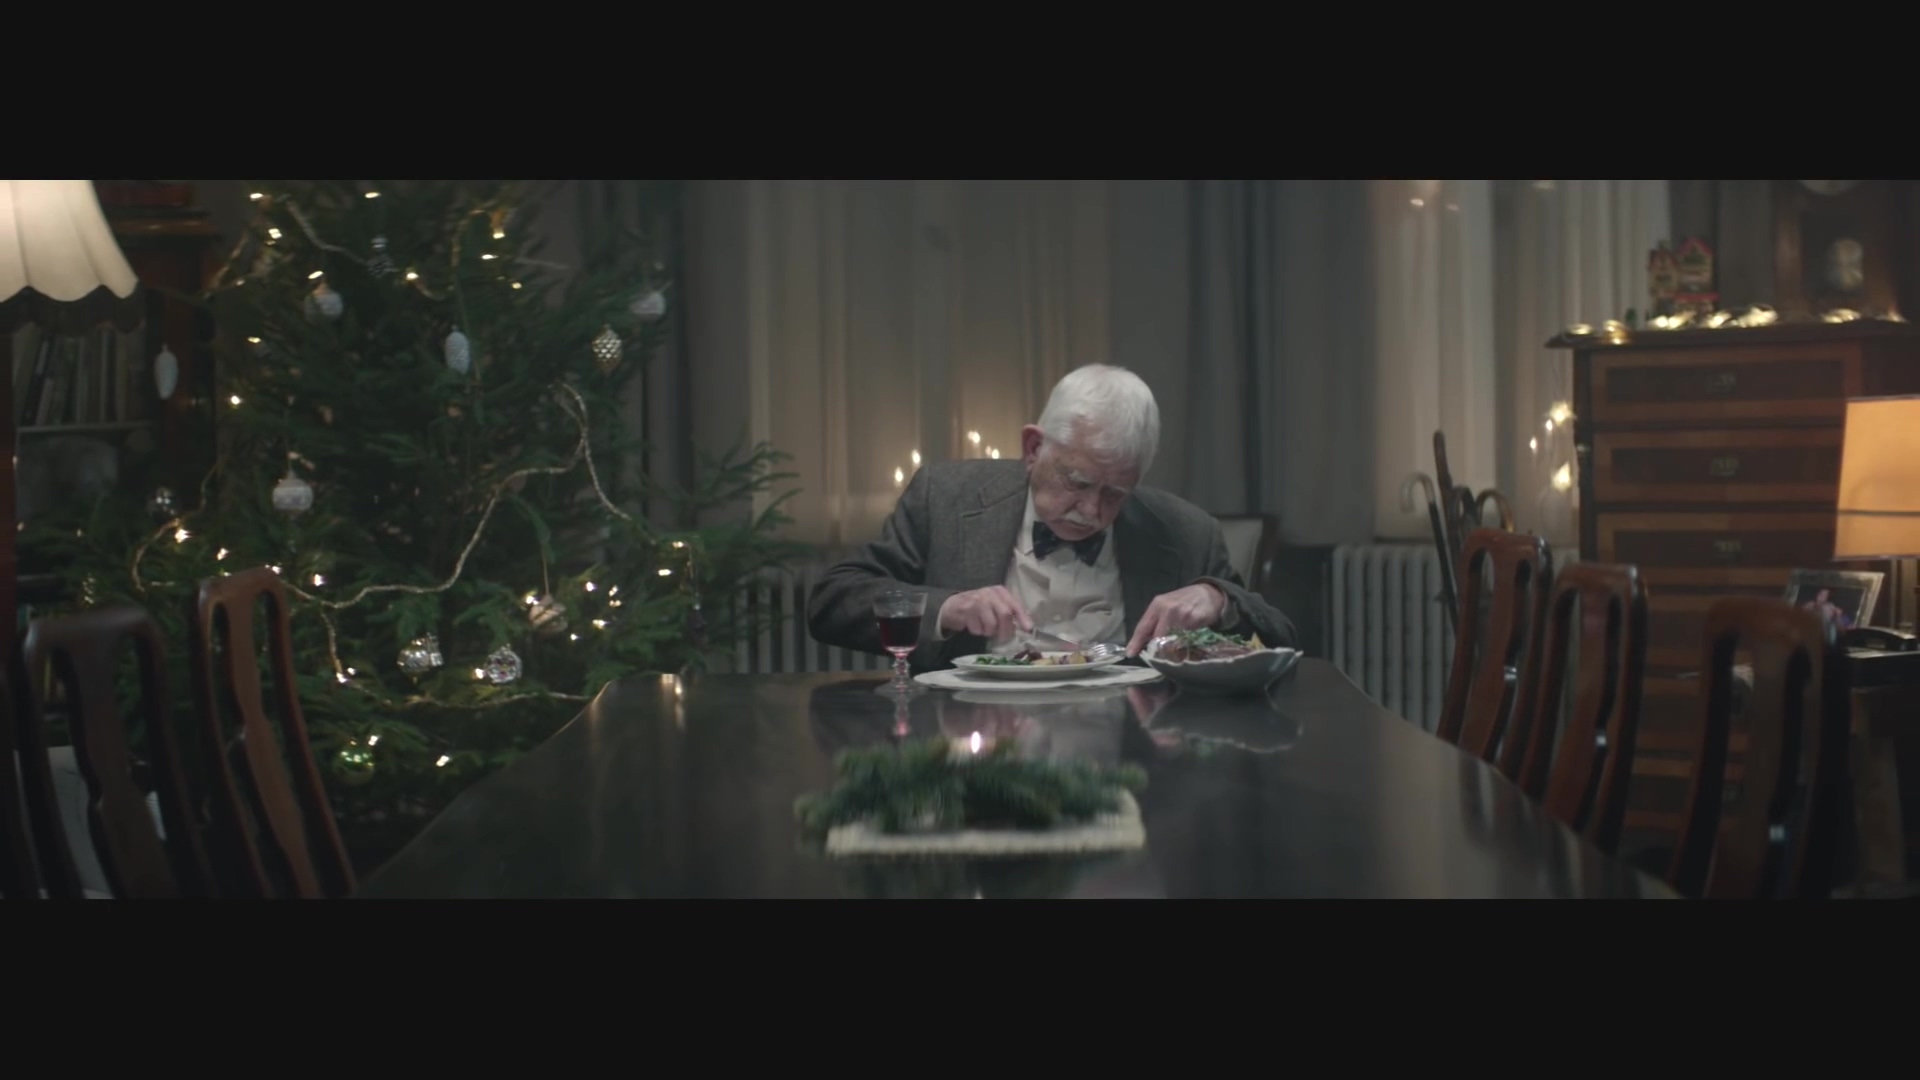 EDEKA Weihnachtsclip(독일 슈퍼마켓 크리마스 광고) - #heimkommen - YouTube (1080p).mp4_20151214_001635.031.jpg